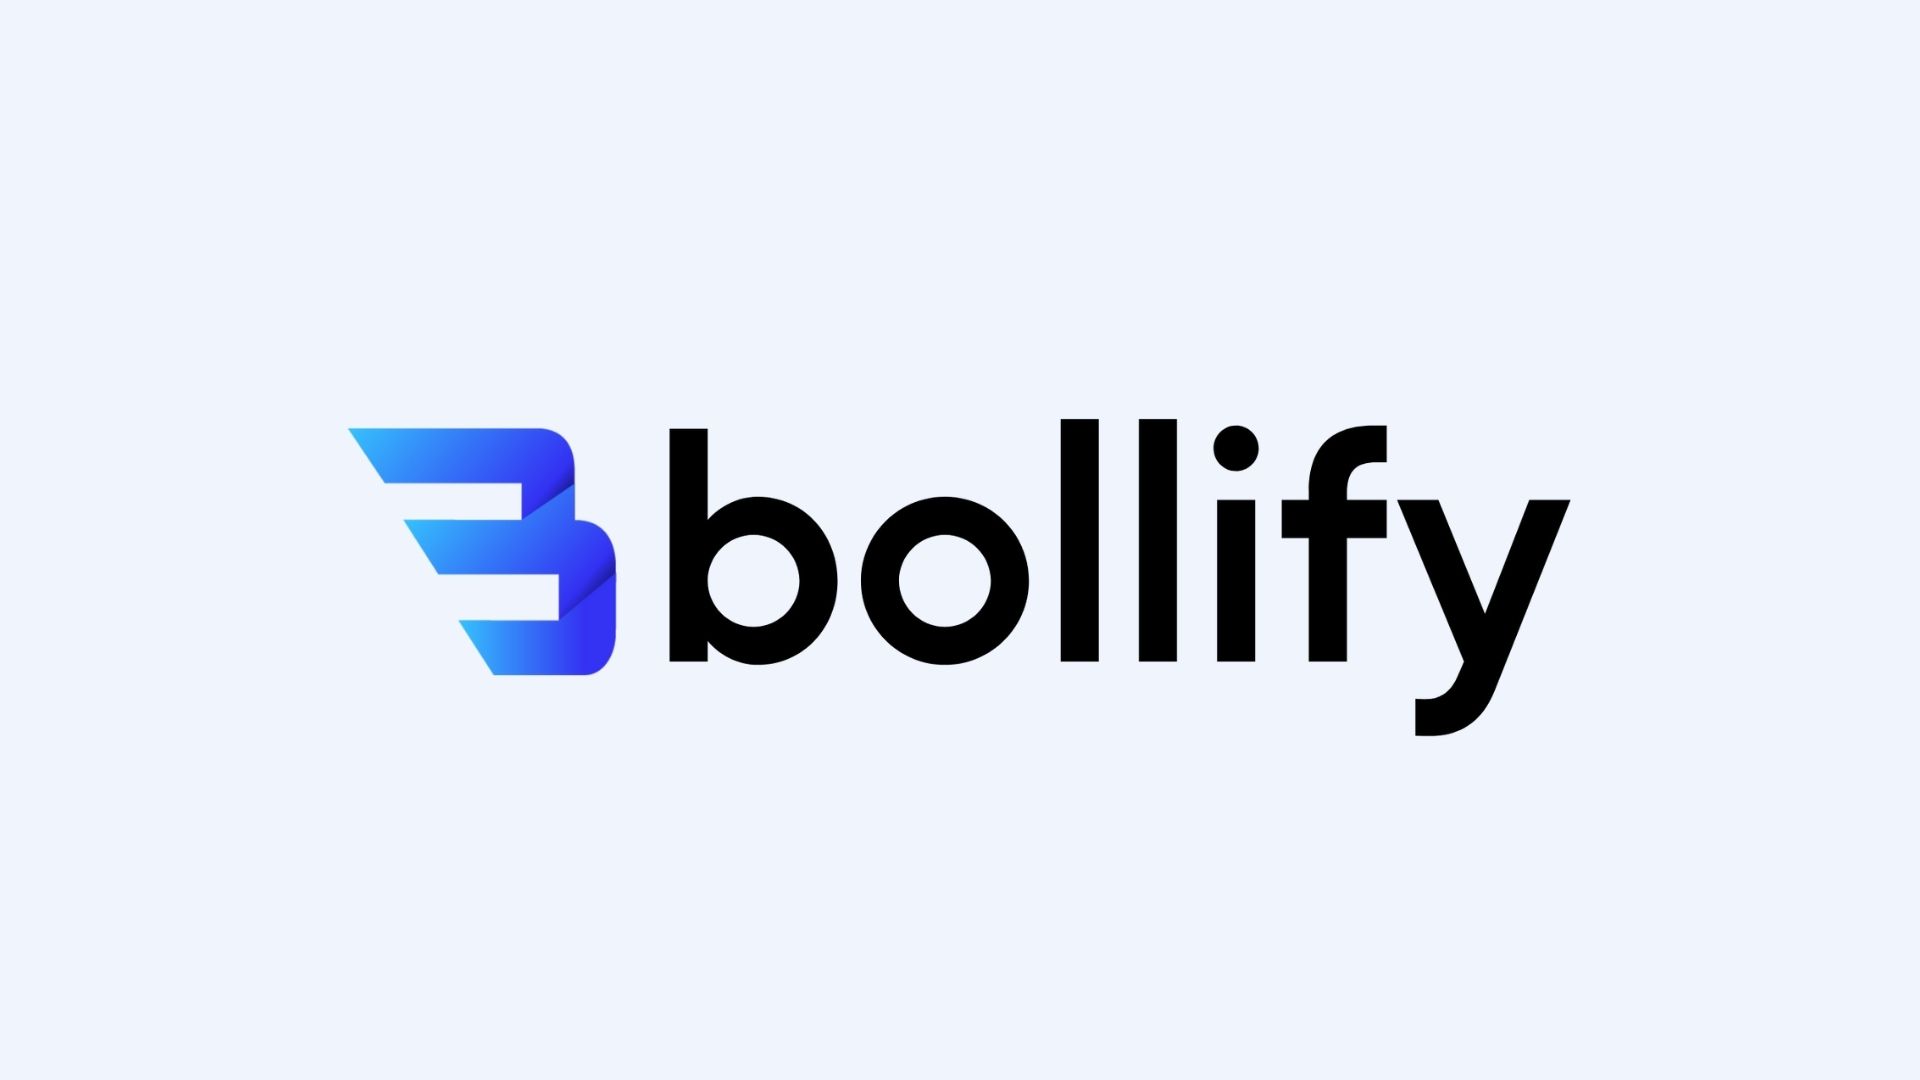 Bolify = Bollify